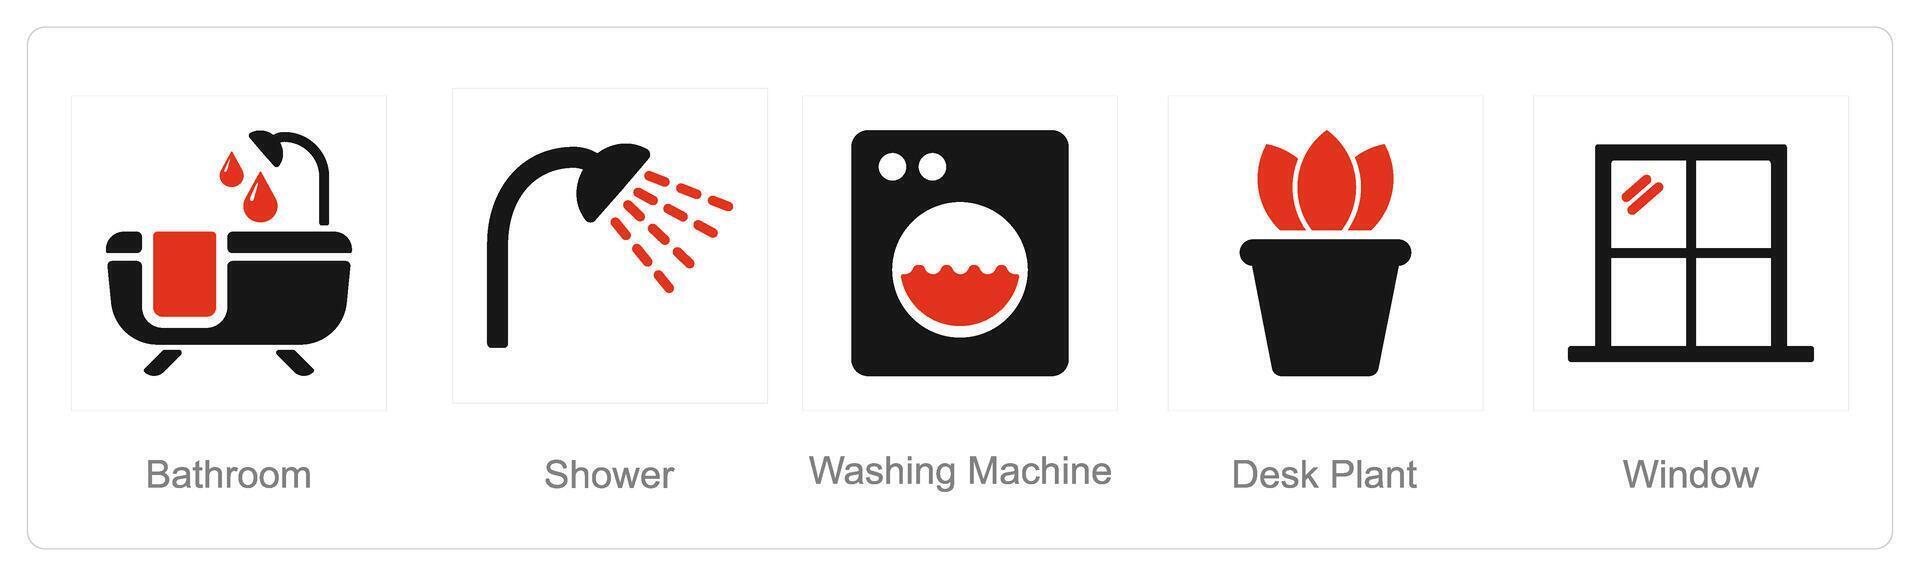 ein einstellen von 5 Zuhause Innere Symbole wie Badezimmer, Dusche, Waschen Maschine vektor